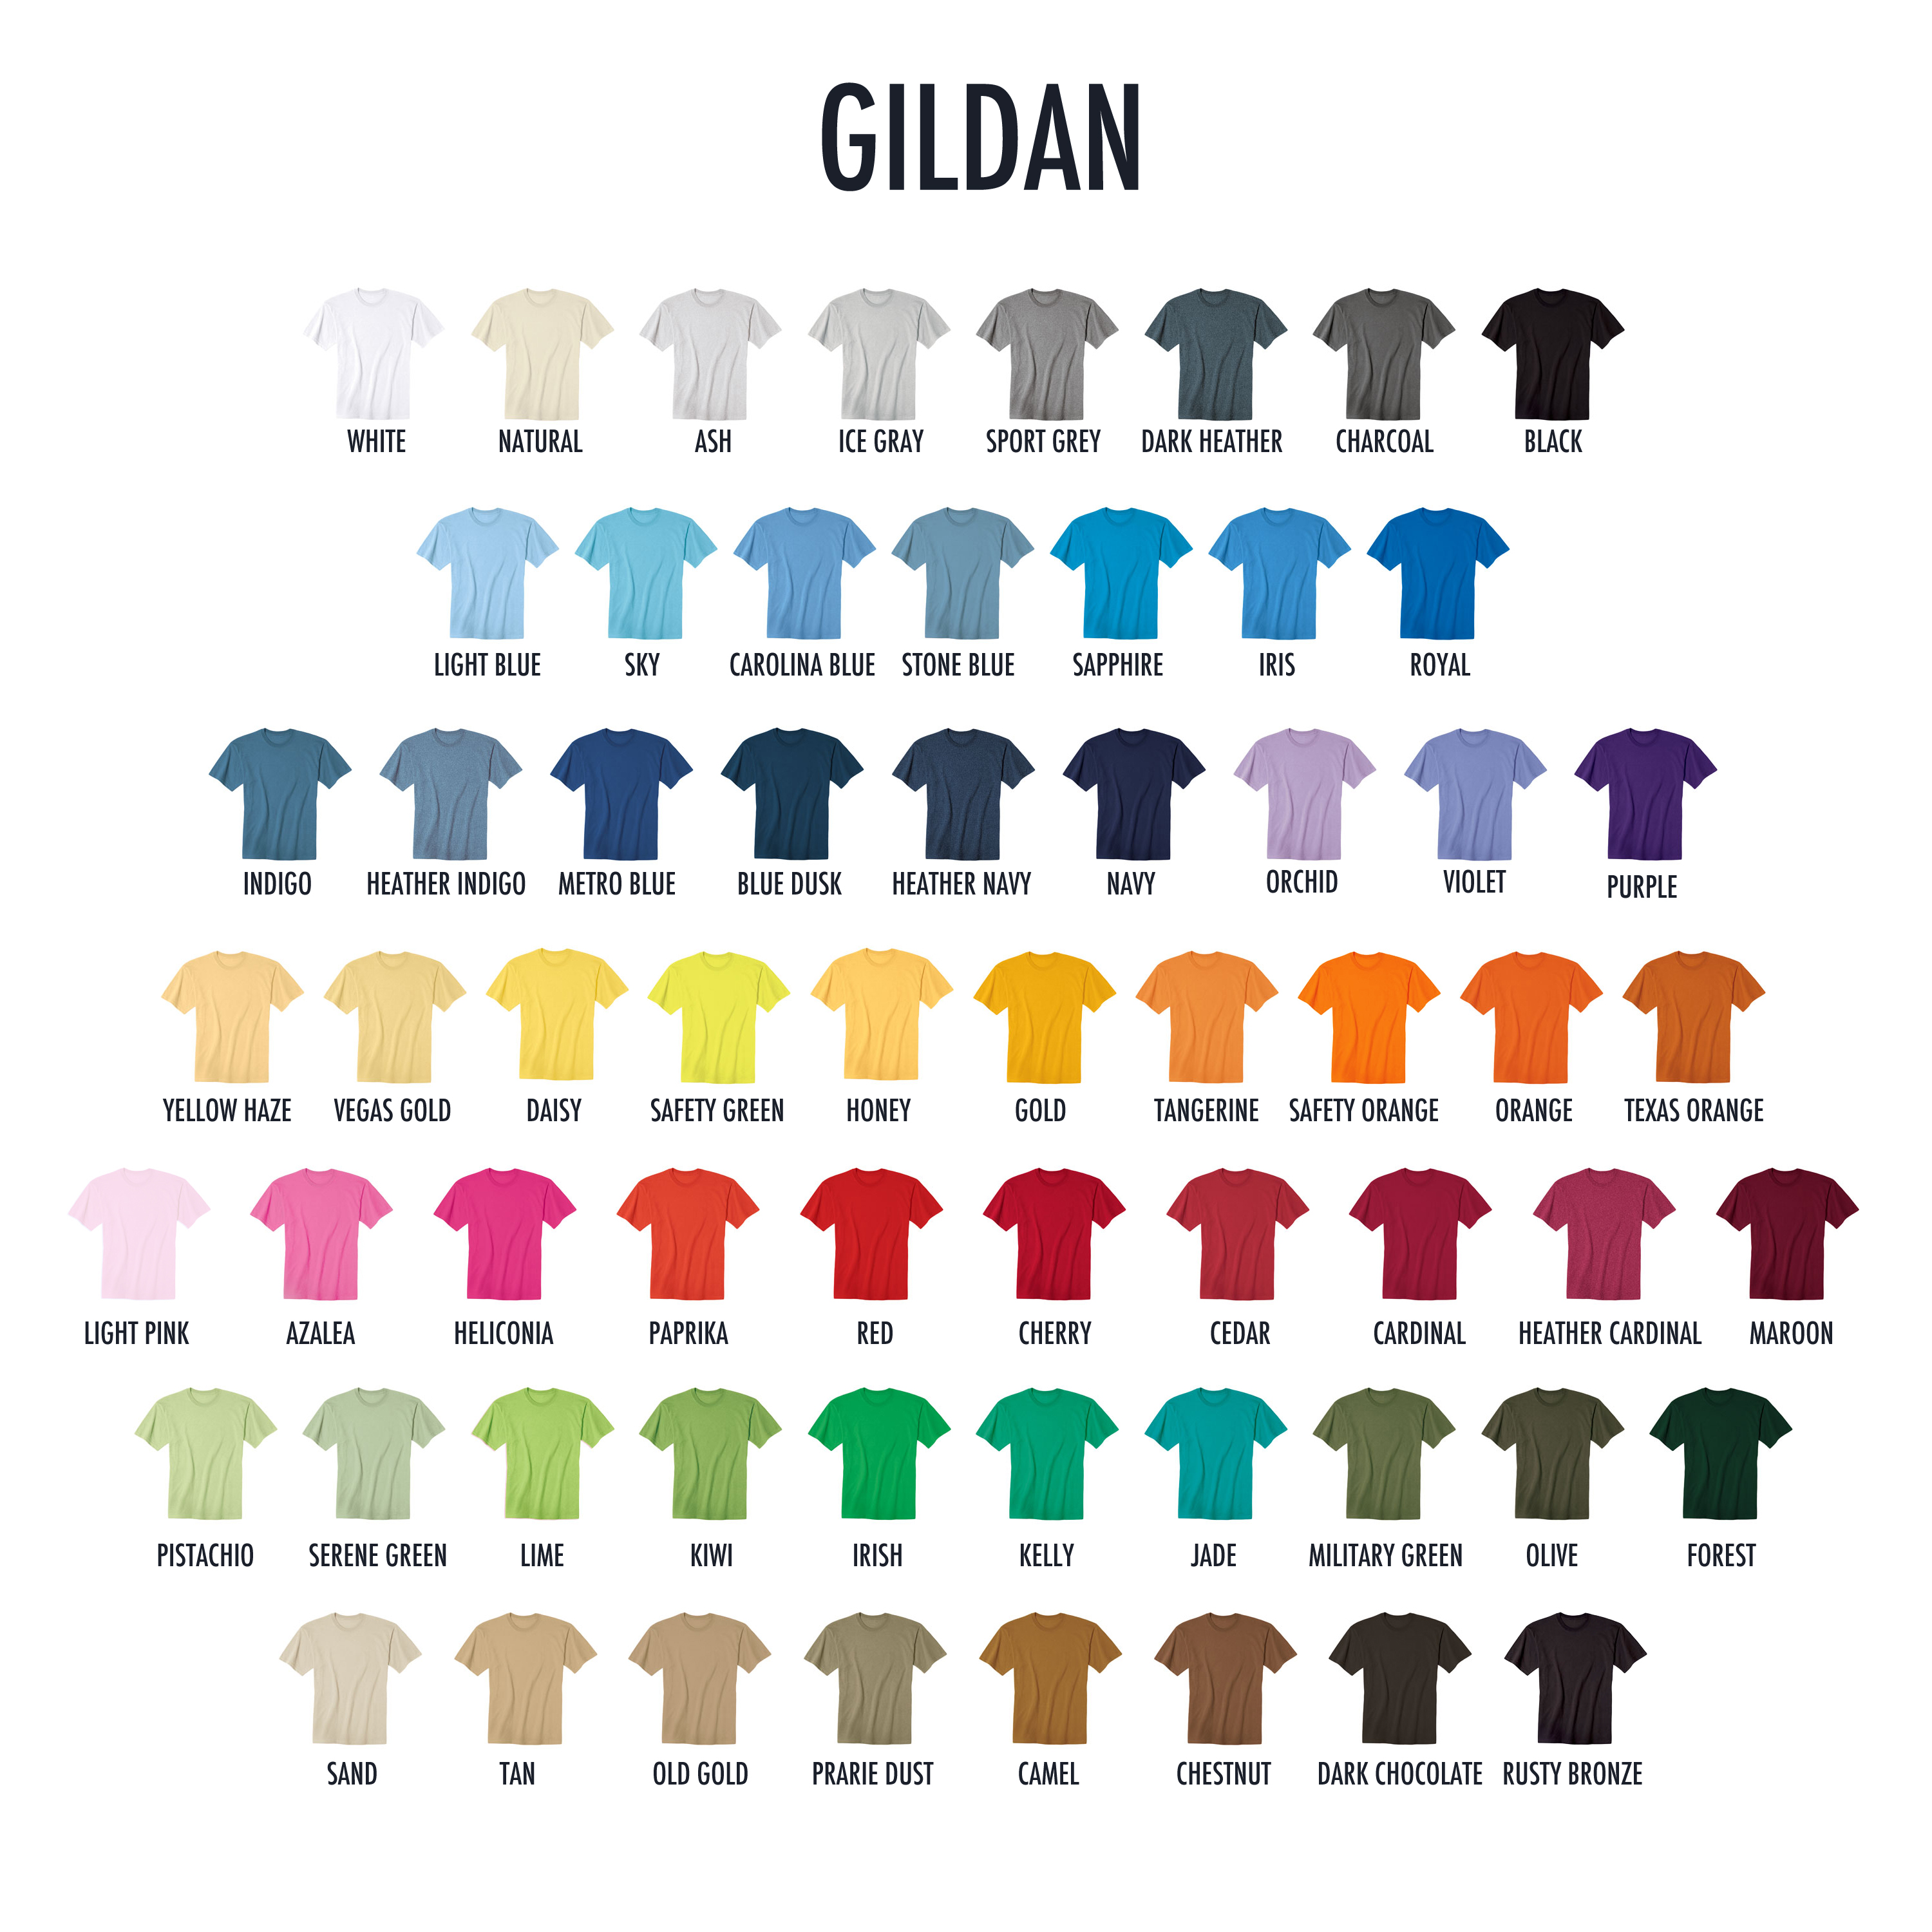 Gildan Tee Color Chart